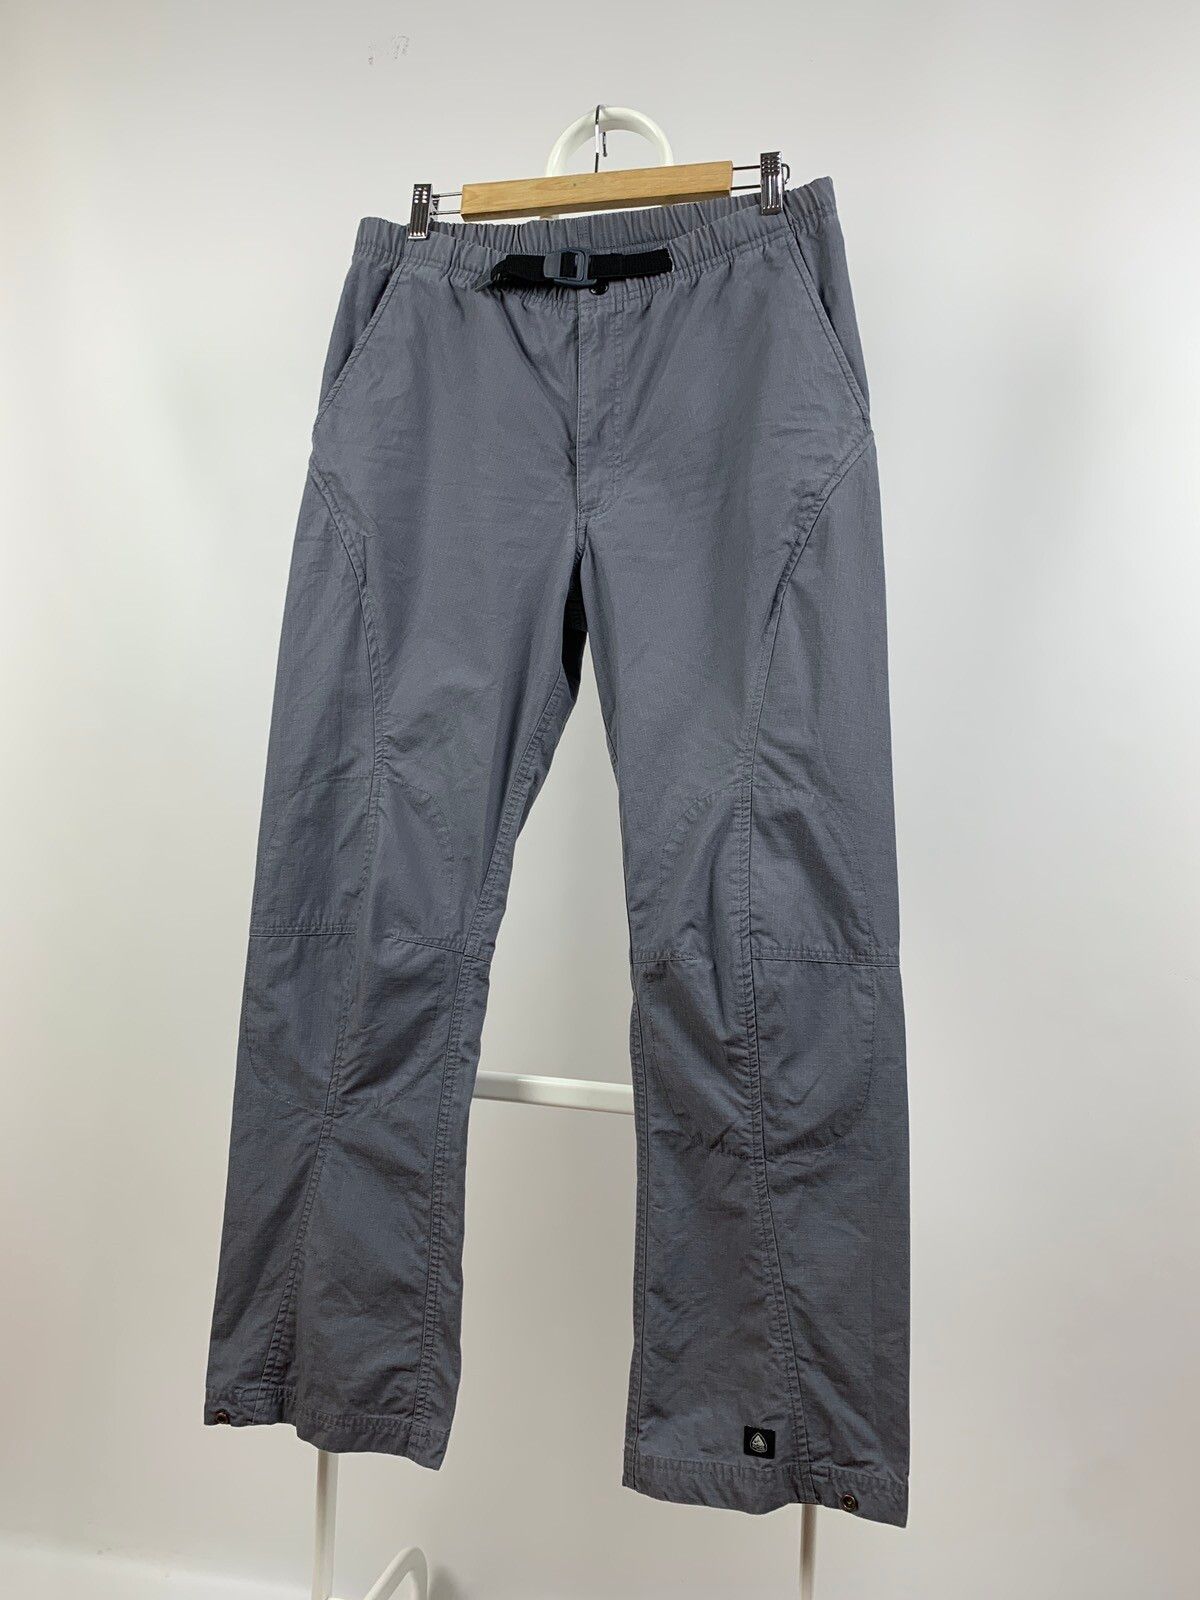 Vintage 00s Vintage Nike ACG Grey Like Cargo Pants | Grailed